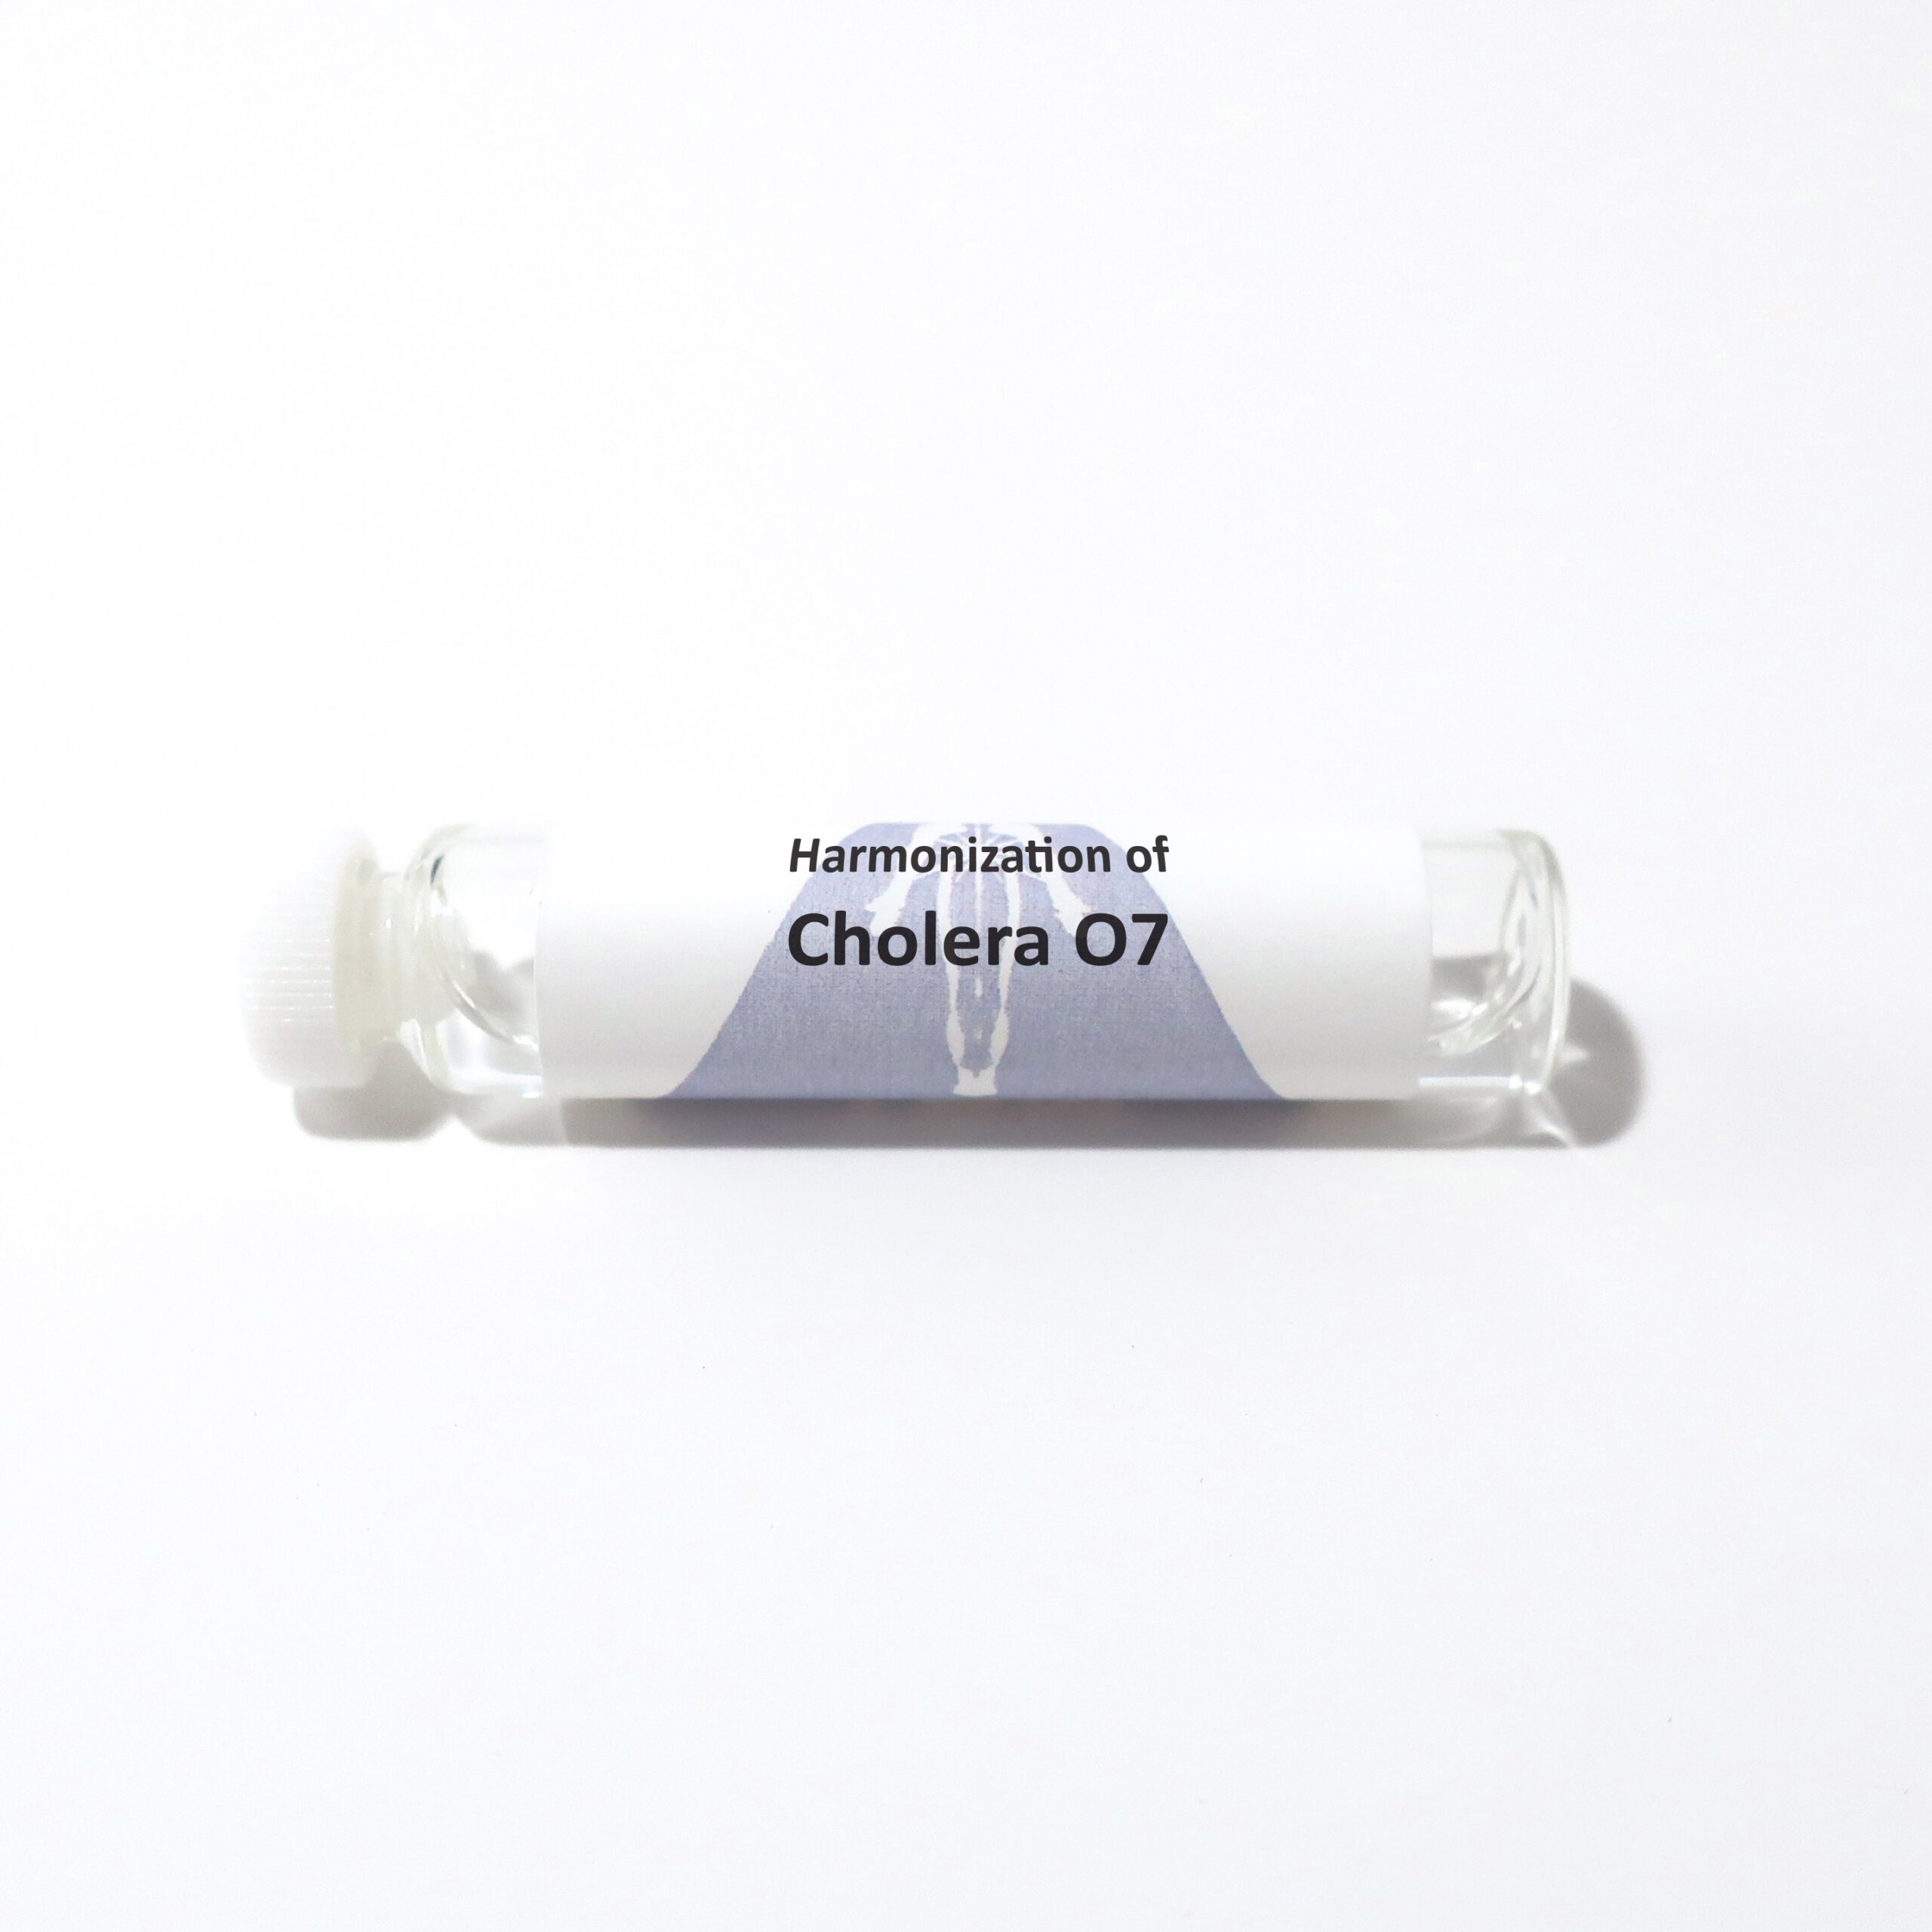 Cholera O7